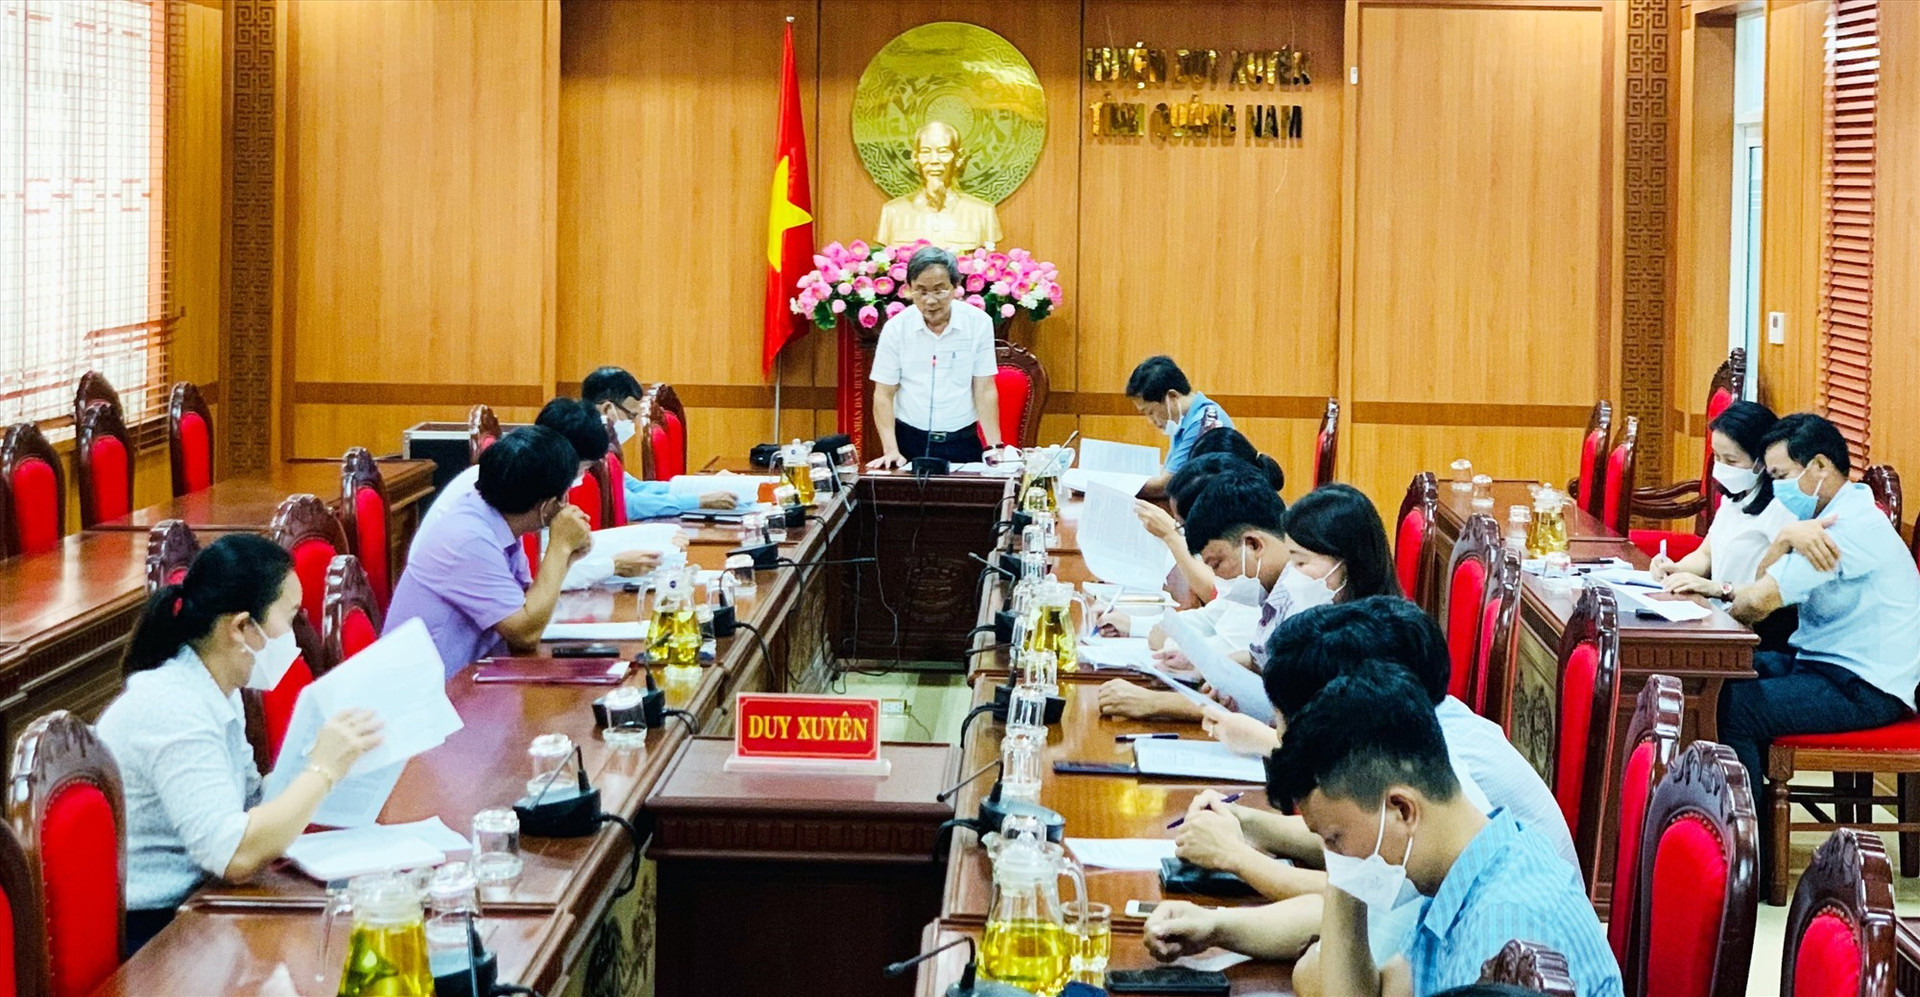 Lễ công bố quyết định thành lập Ban xúc tiến đầu tư và hỗ trợ doanh nghiệp huyện Duy Xuyên diễn ra chiều 29.3. Ảnh: N.T